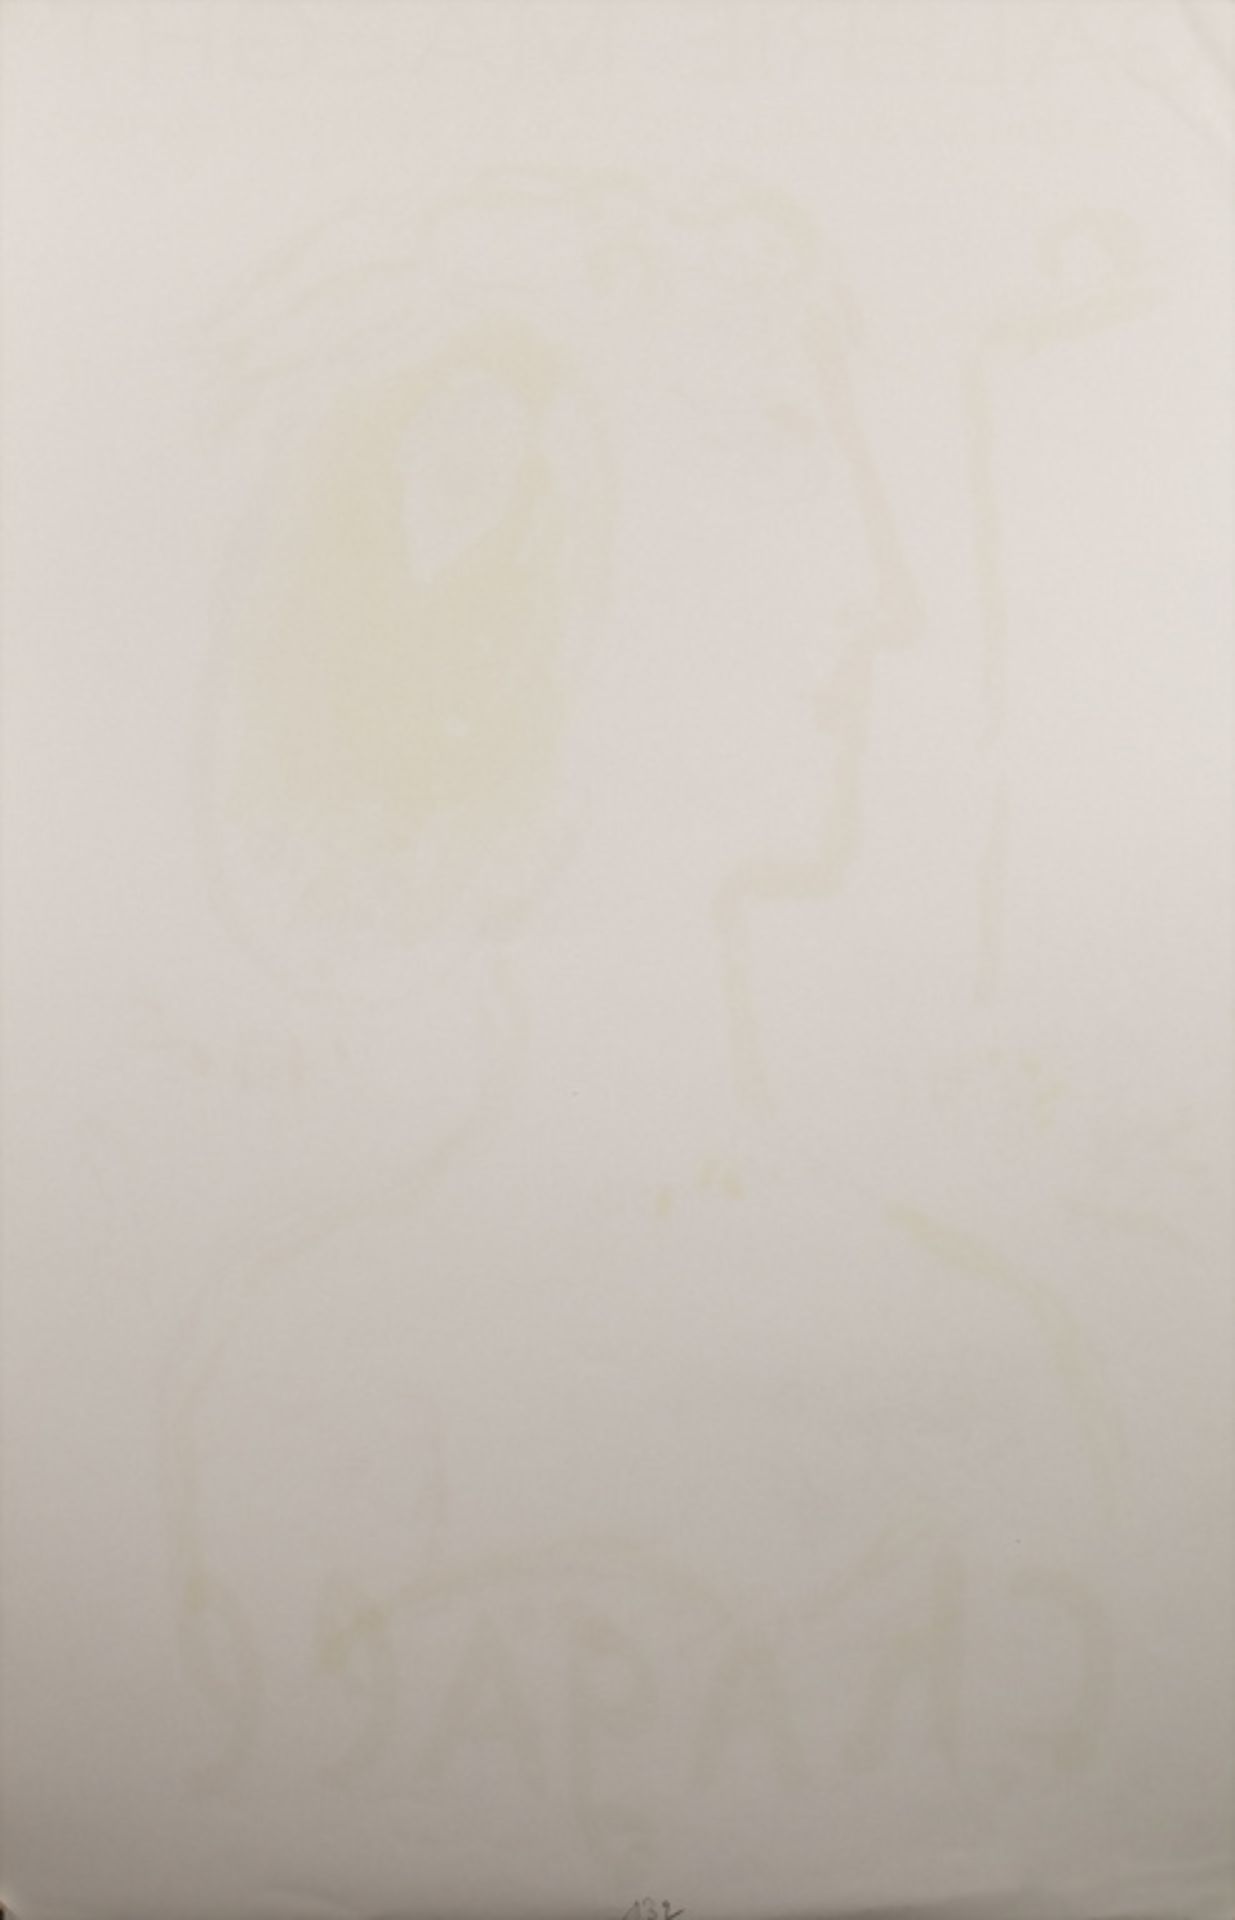 Marc CHAGALL (1887-1985), Ausstellungsplakat / Exhibition poster, Galerie Maeght, Paris, 1972 - Bild 2 aus 2